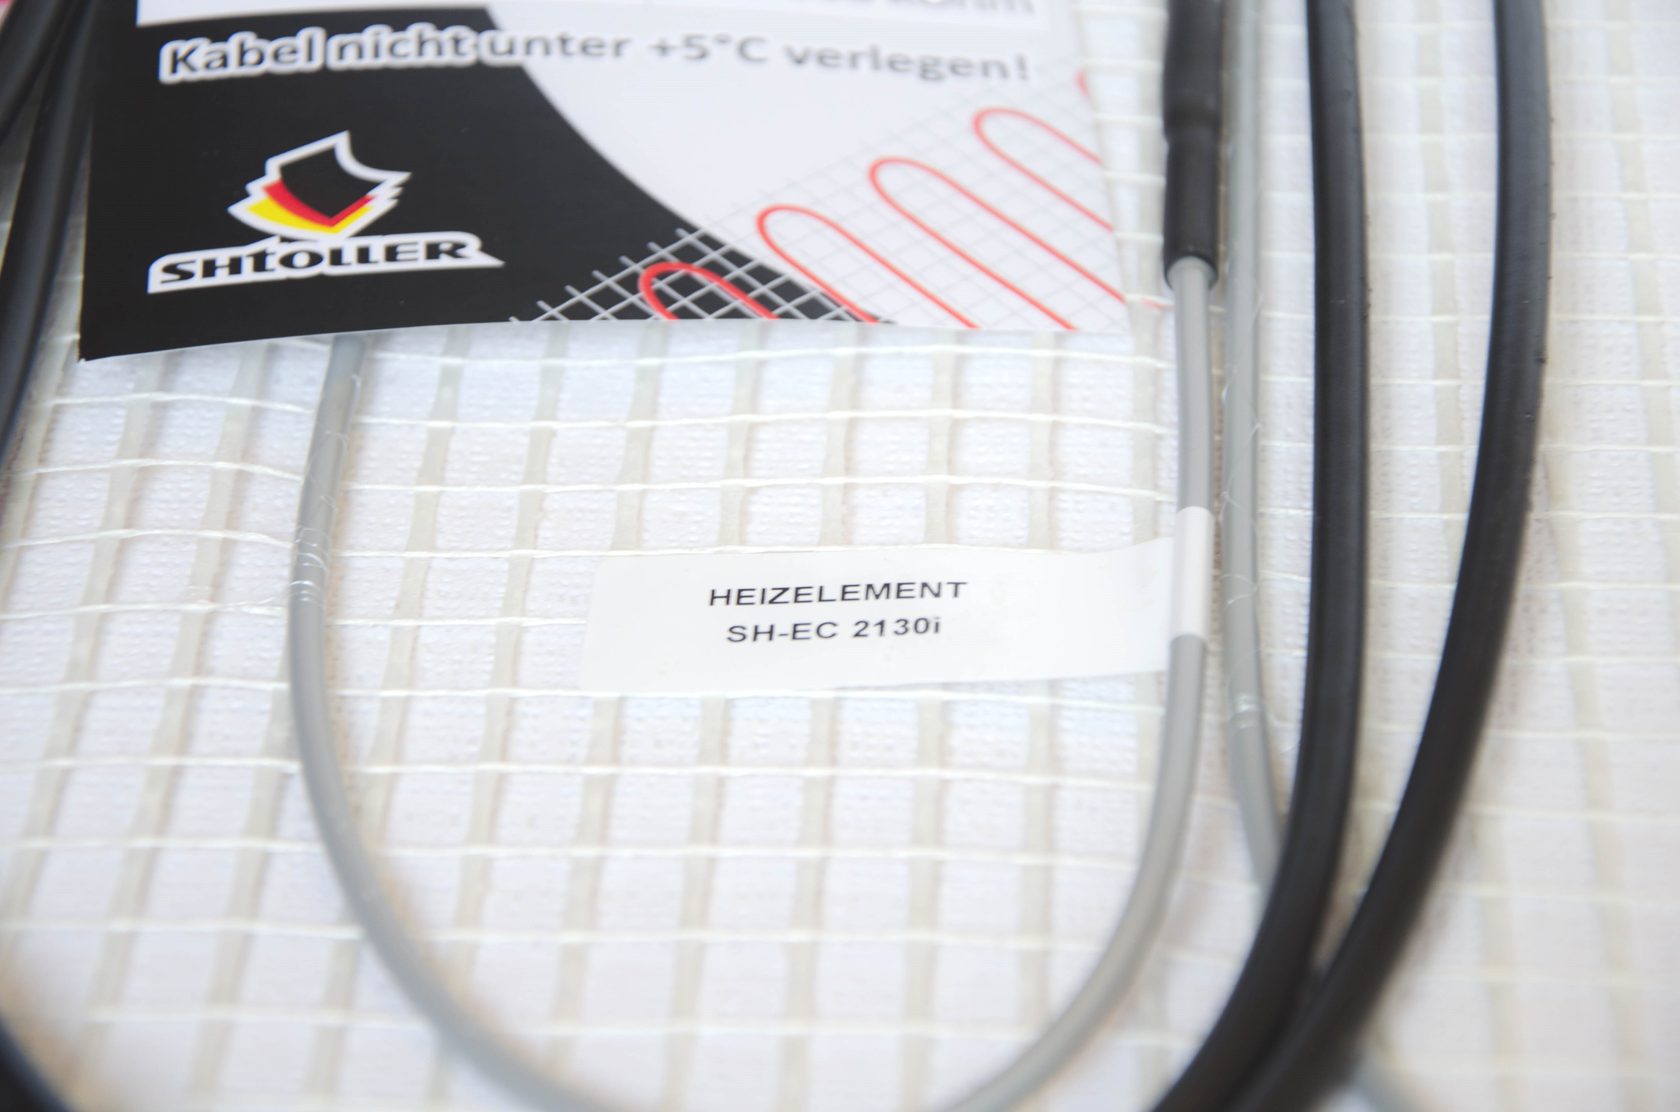 Електрична тепла підлога Shtoller SH-EC 2140i відгуки - зображення 5